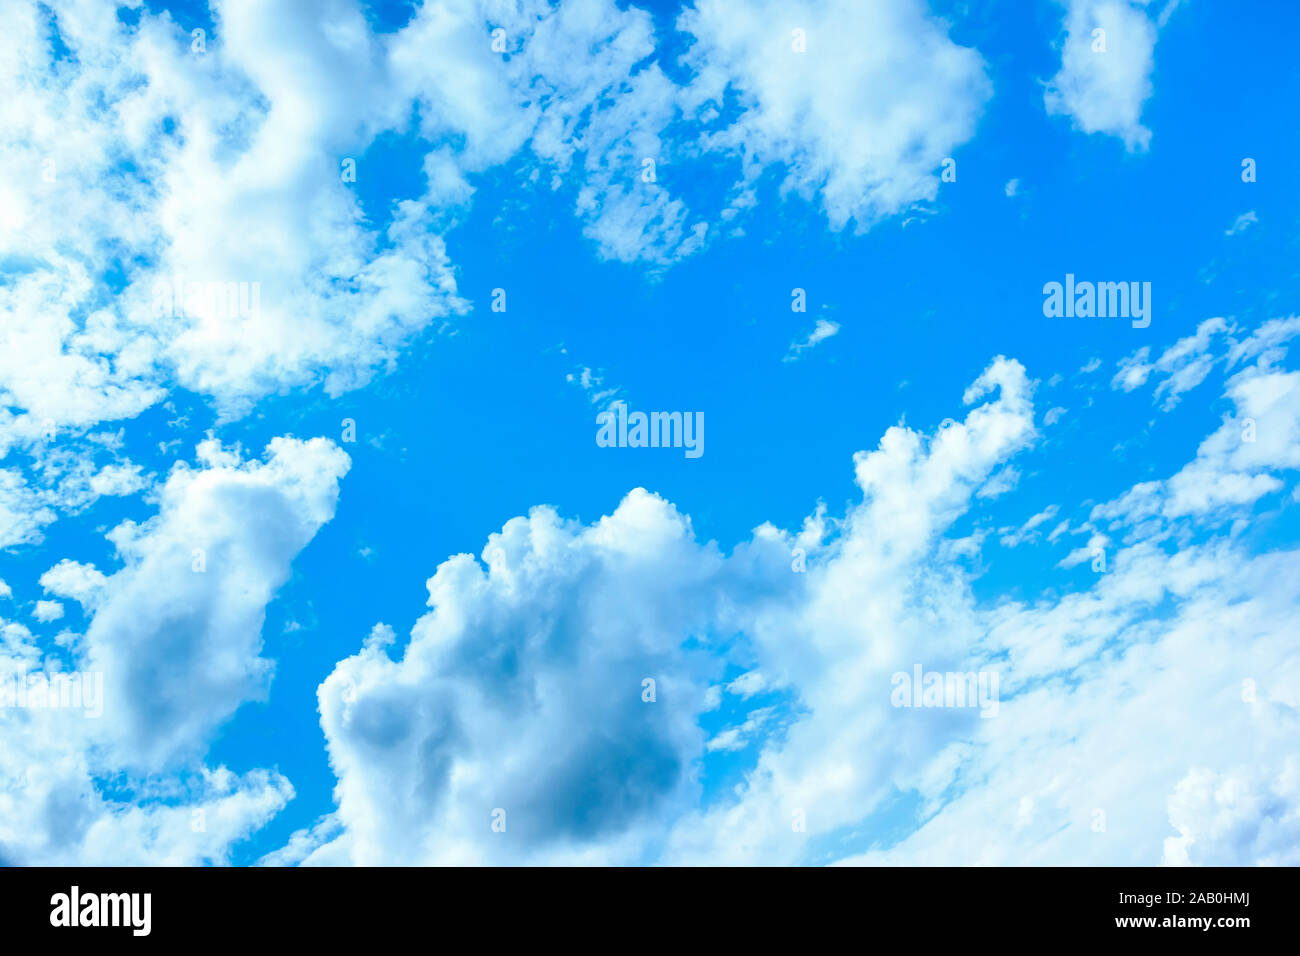 Ein wunderschoener blauer Himmel mit weissen Wolken Foto Stock